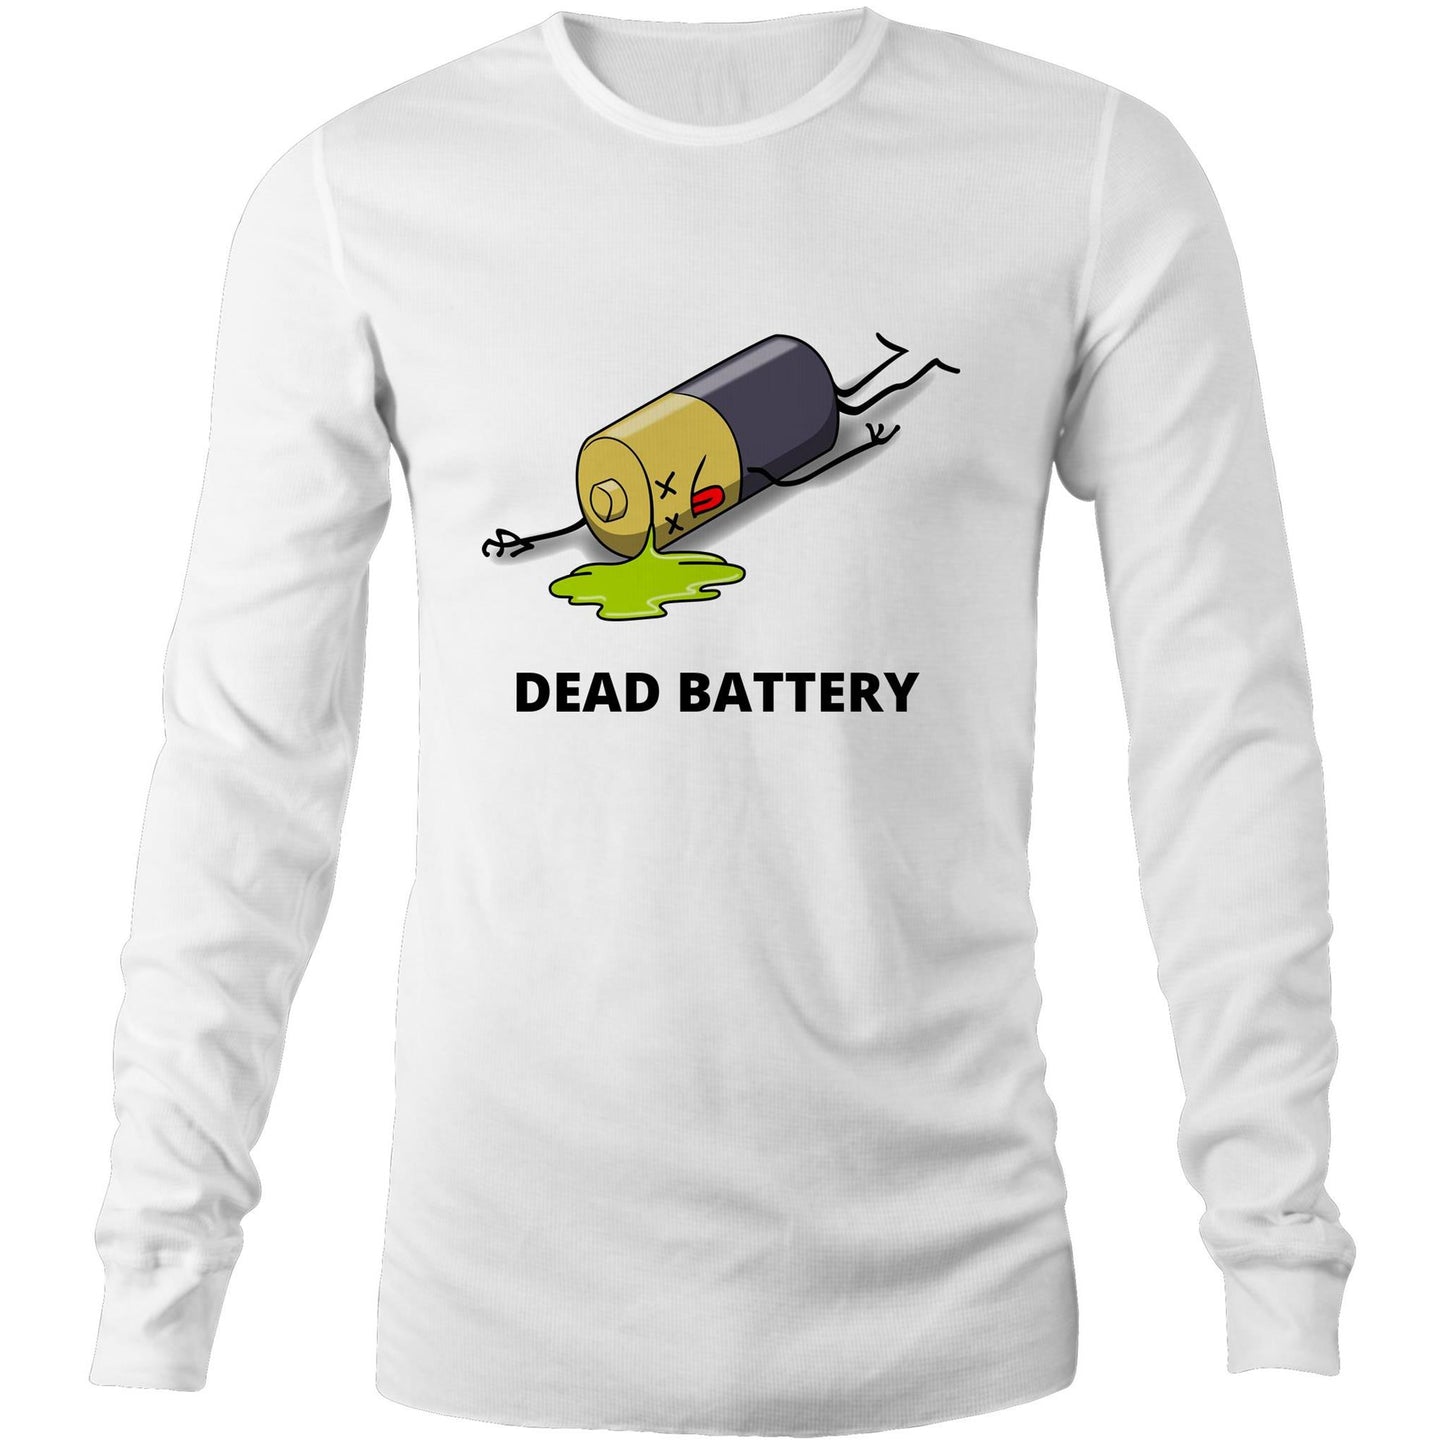 Dead Battery - Unisex Long Sleeve T-Shirt White Unisex Long Sleeve T-shirt Funny Mens Womens